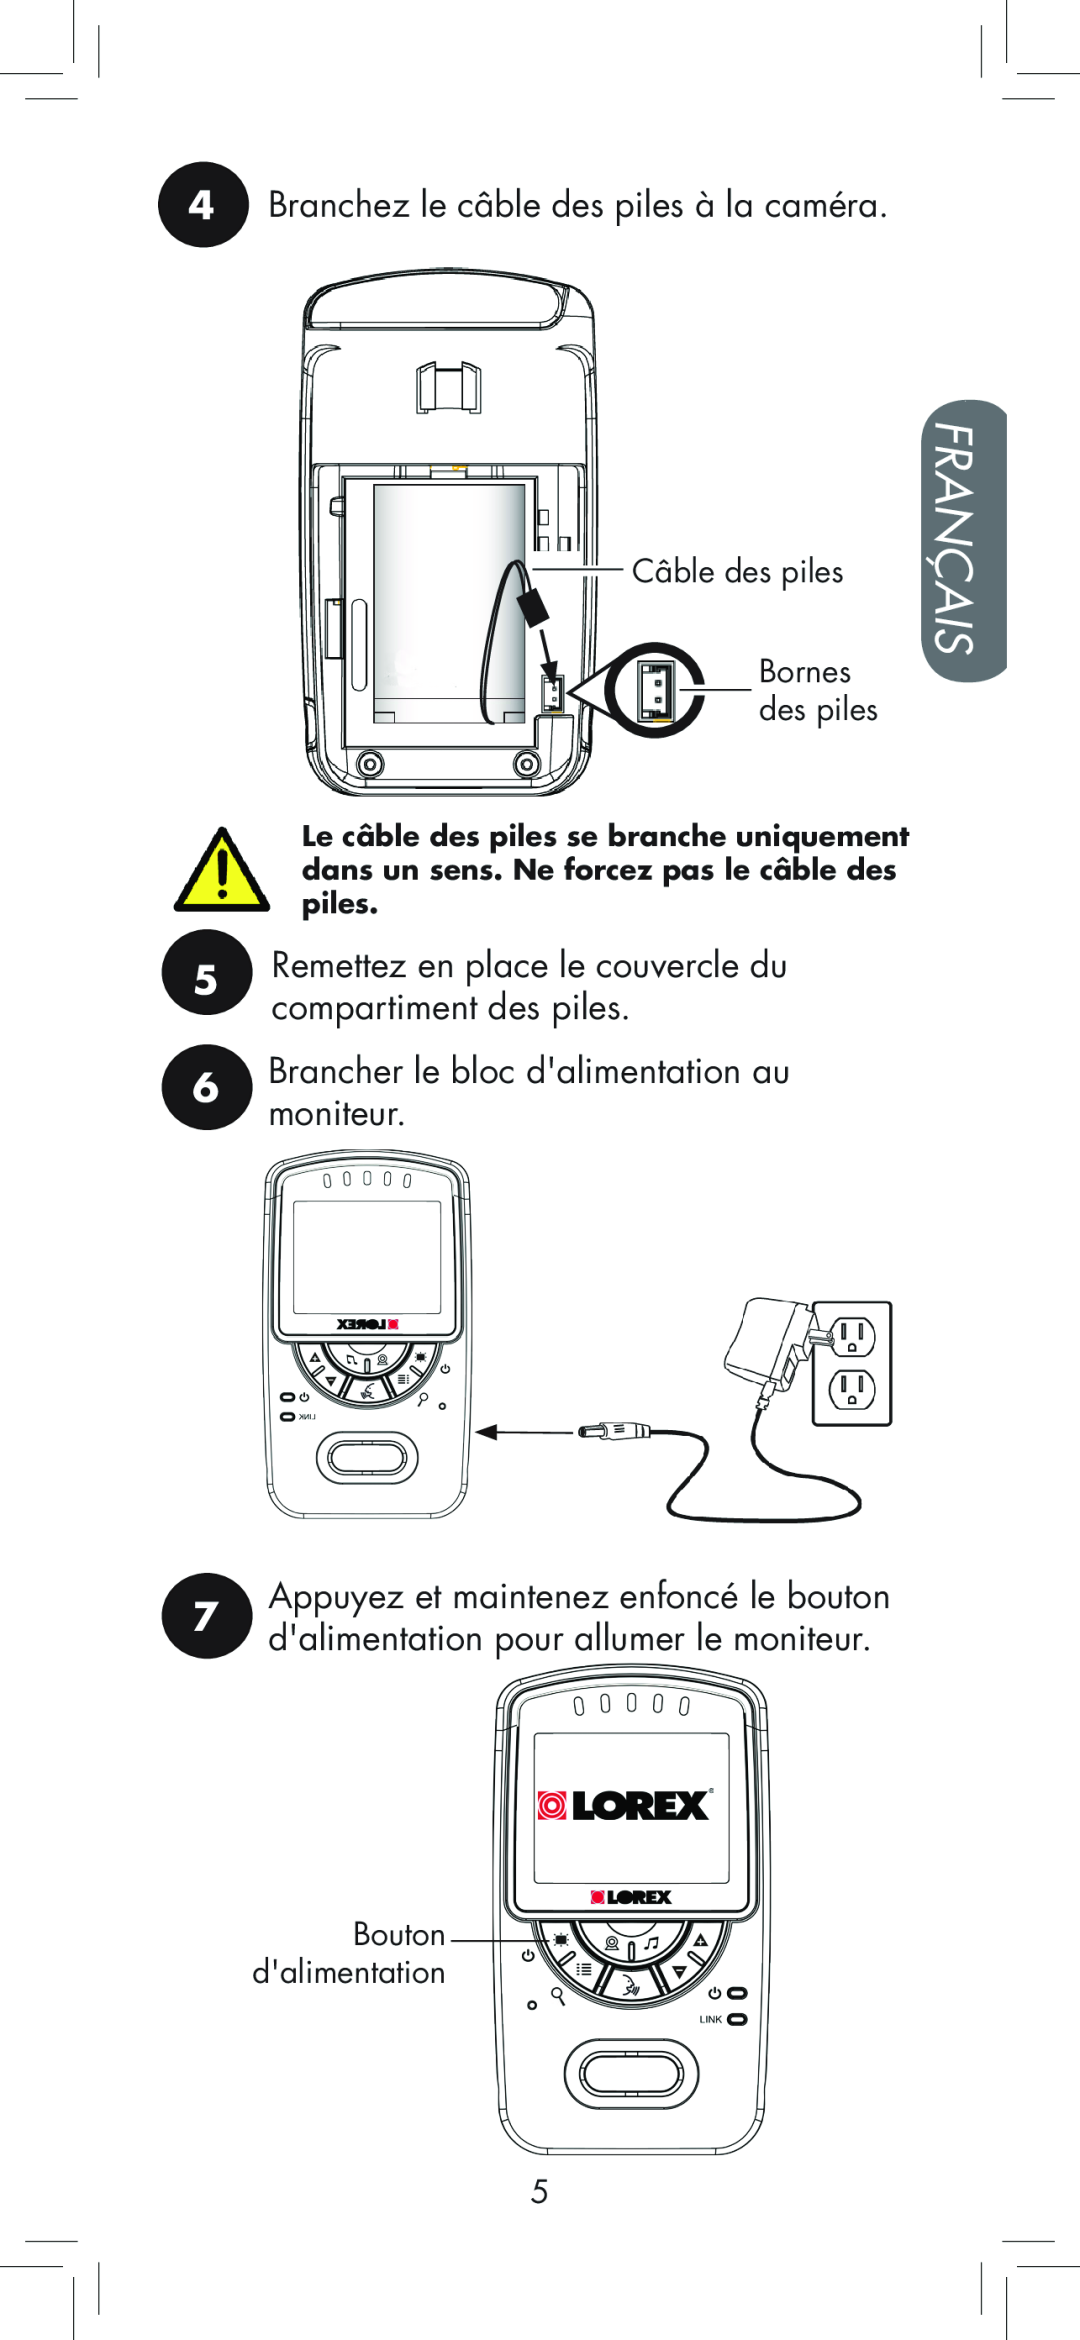 LOREX Technology BB2411 Français, 4Branchez le câble des piles à la caméra, 6Brancher le bloc dalimentation au moniteur 